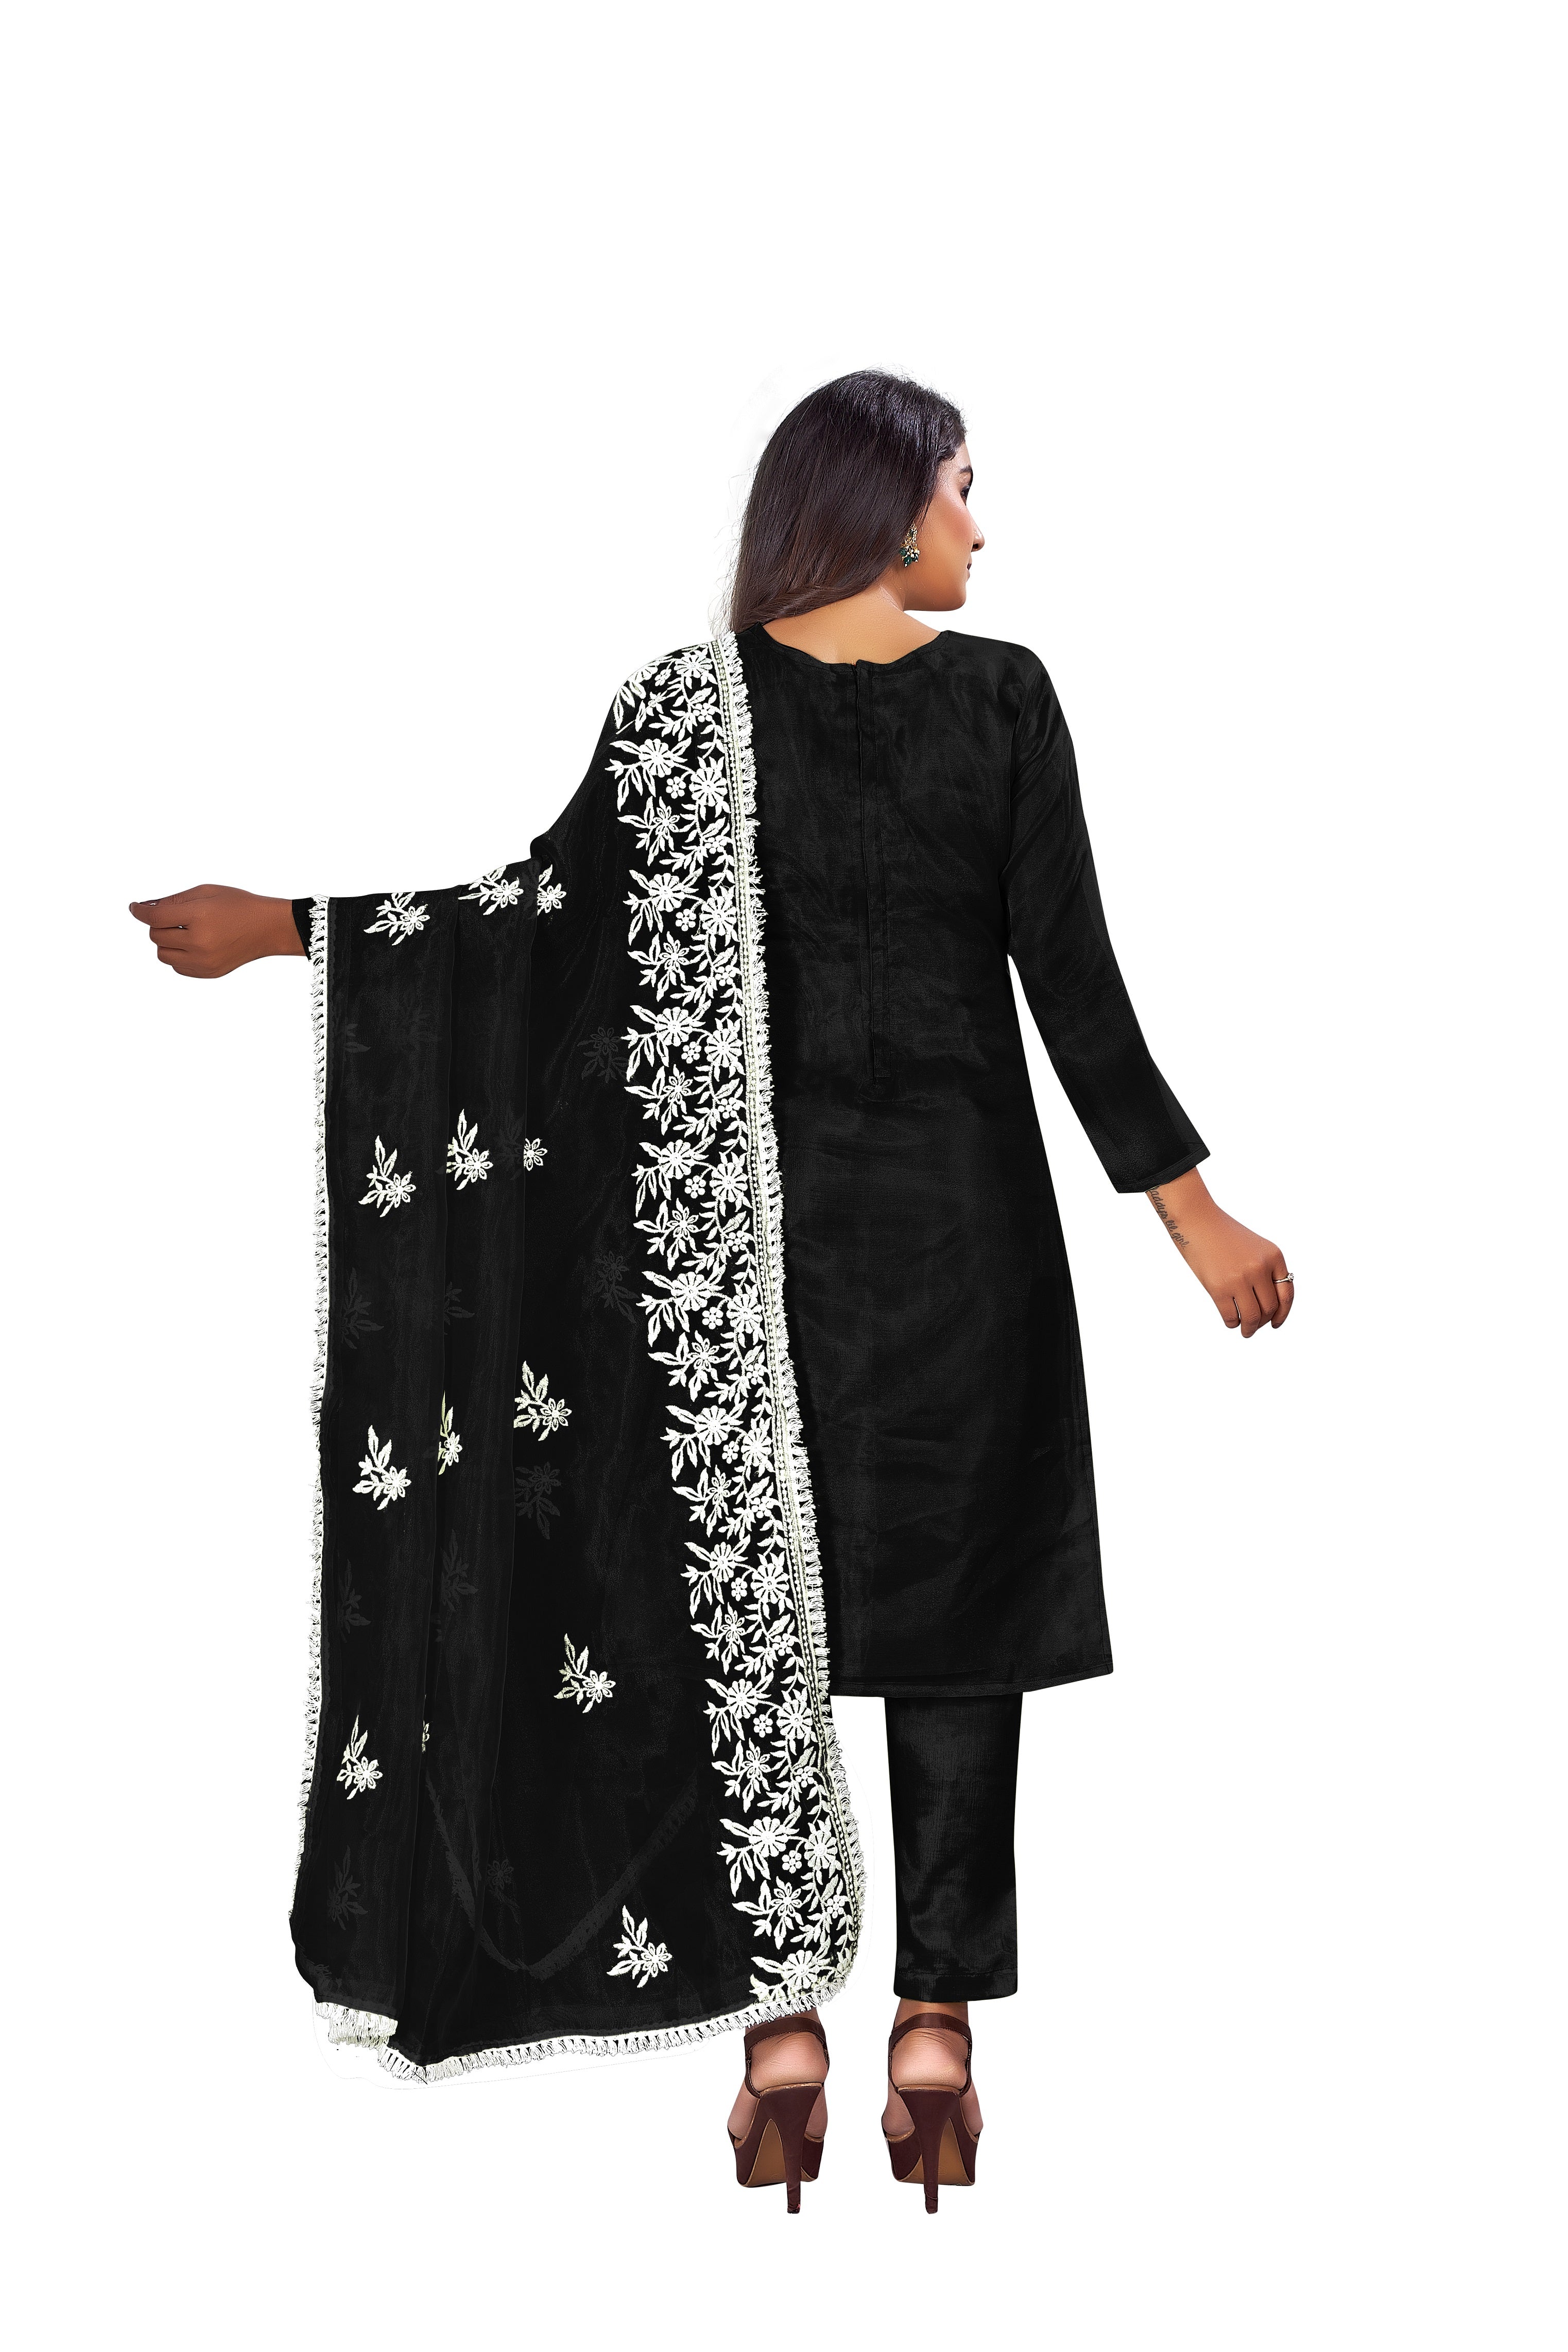 Women's Black Colour Semi-Stitched Suit Sets - Dwija Fashion